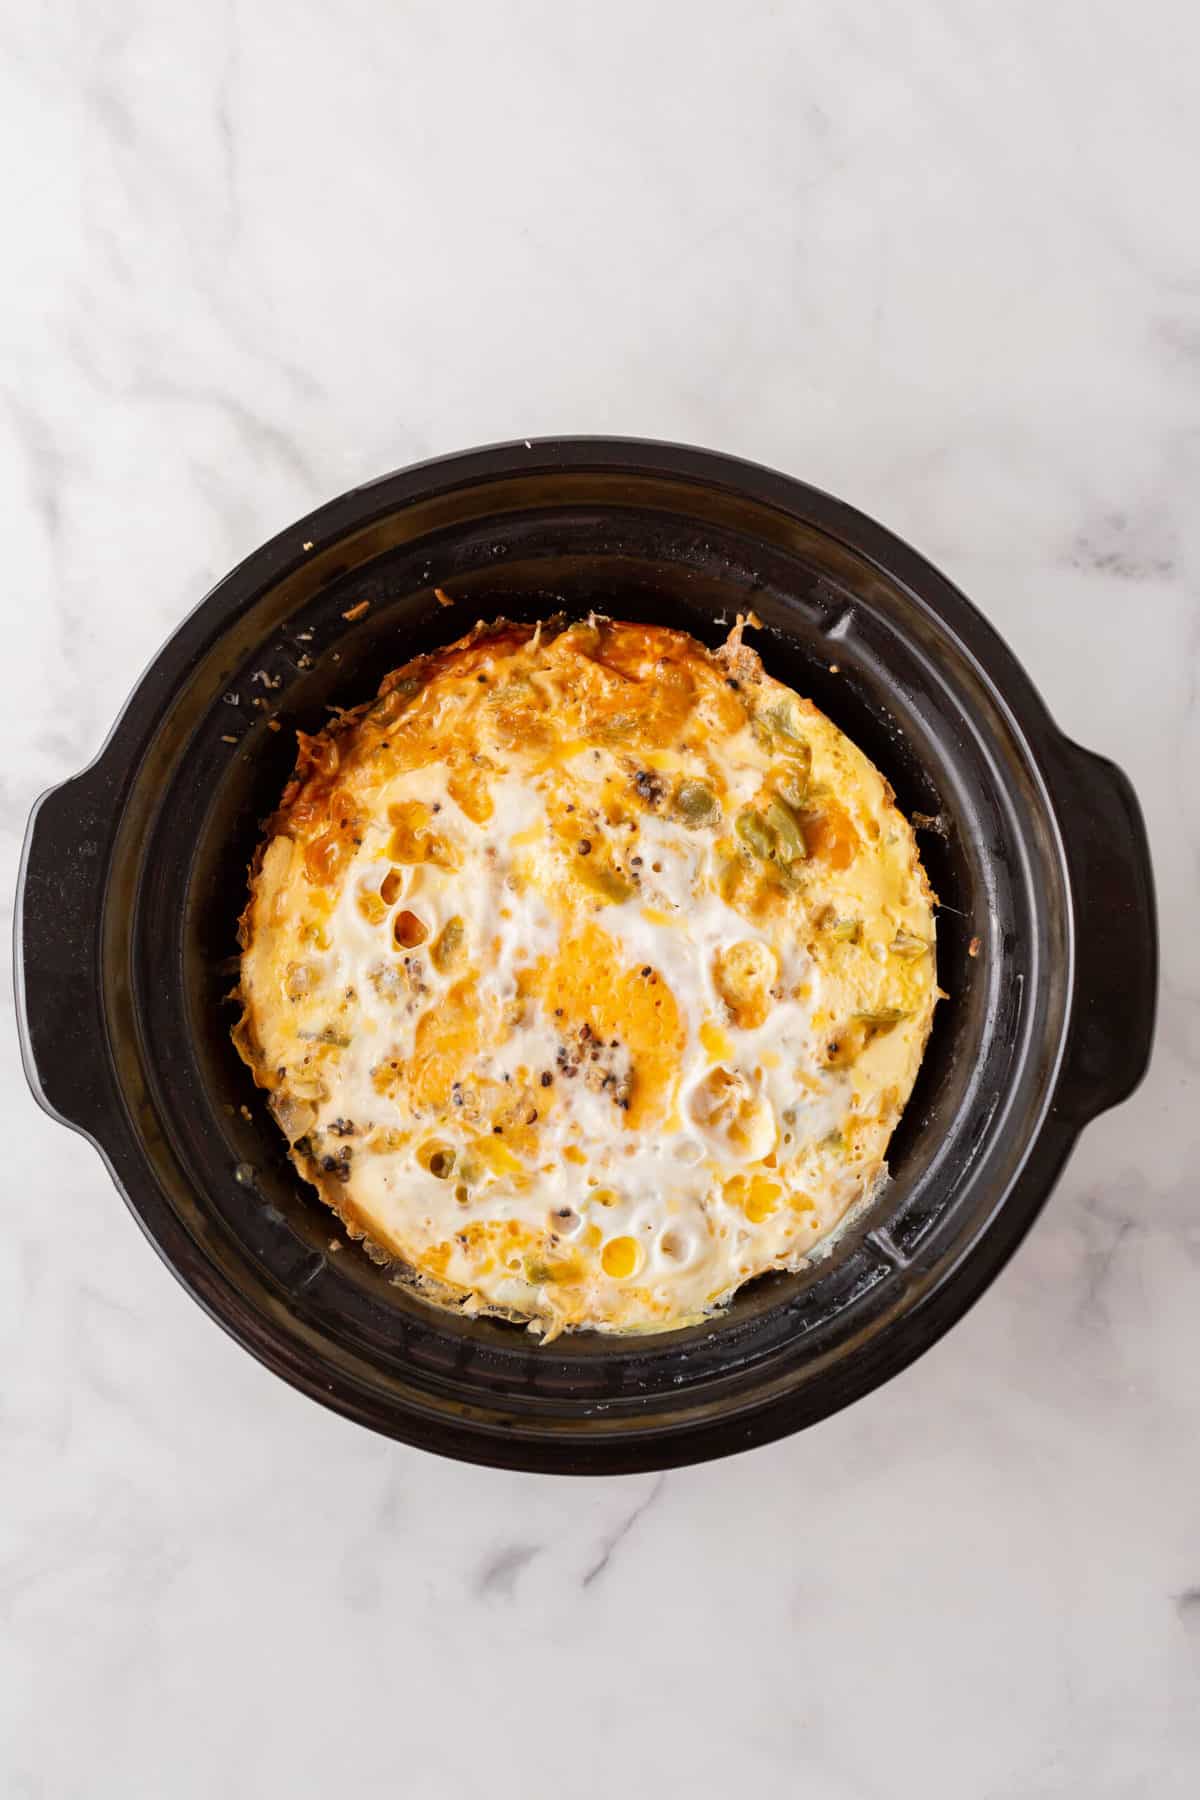 breakfast casserole made in a crockpot